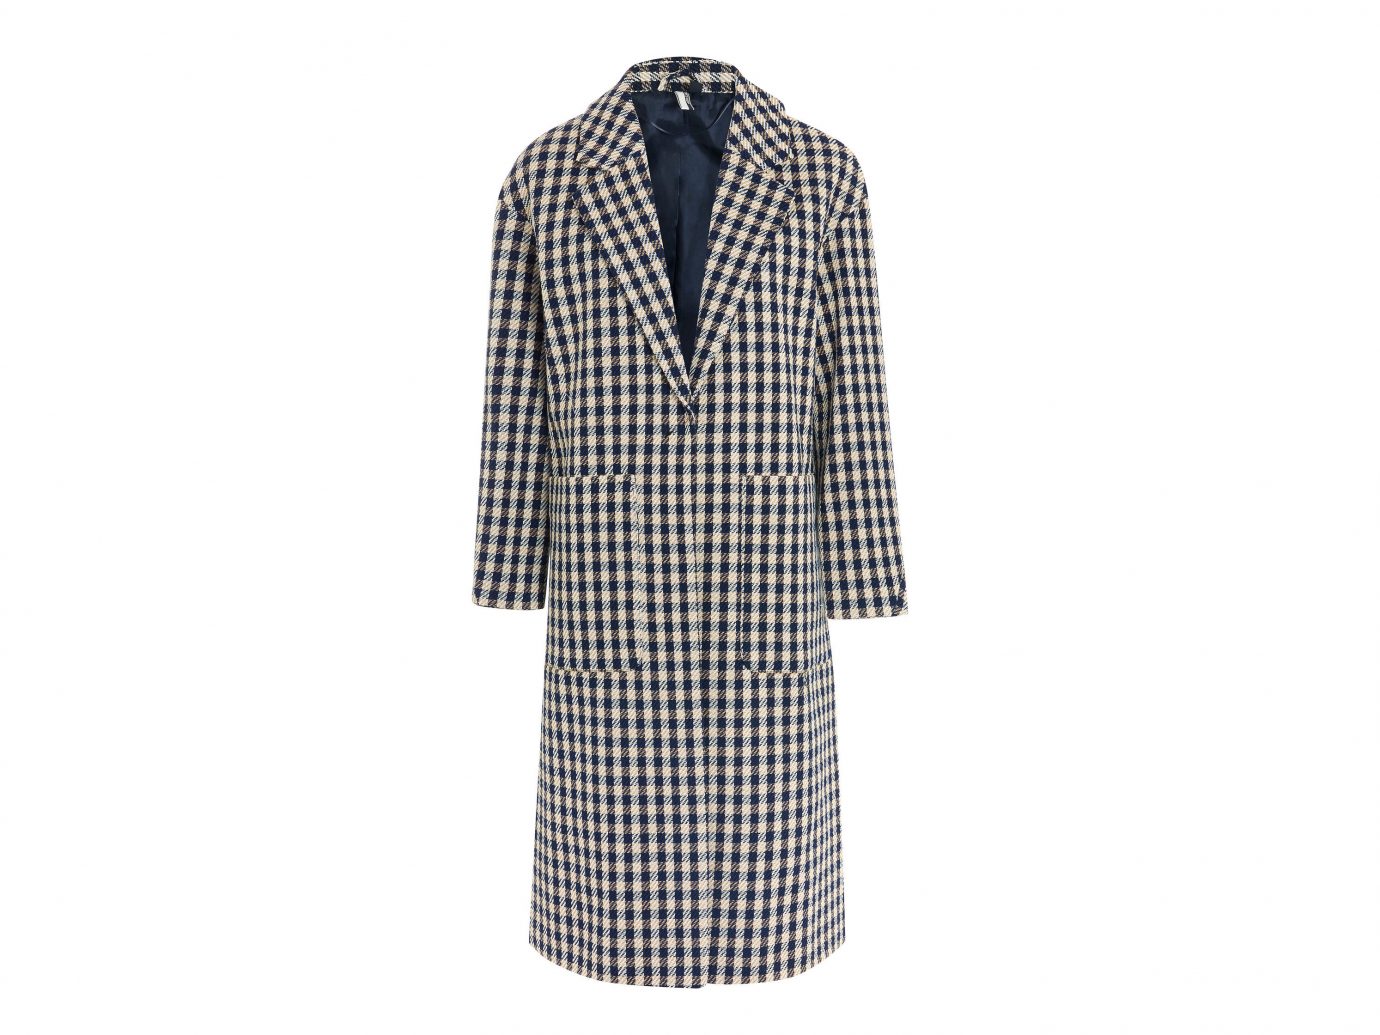 Travel Shop clothing day dress coat outerwear plaid dress pattern tartan sleeve robe nightwear overcoat